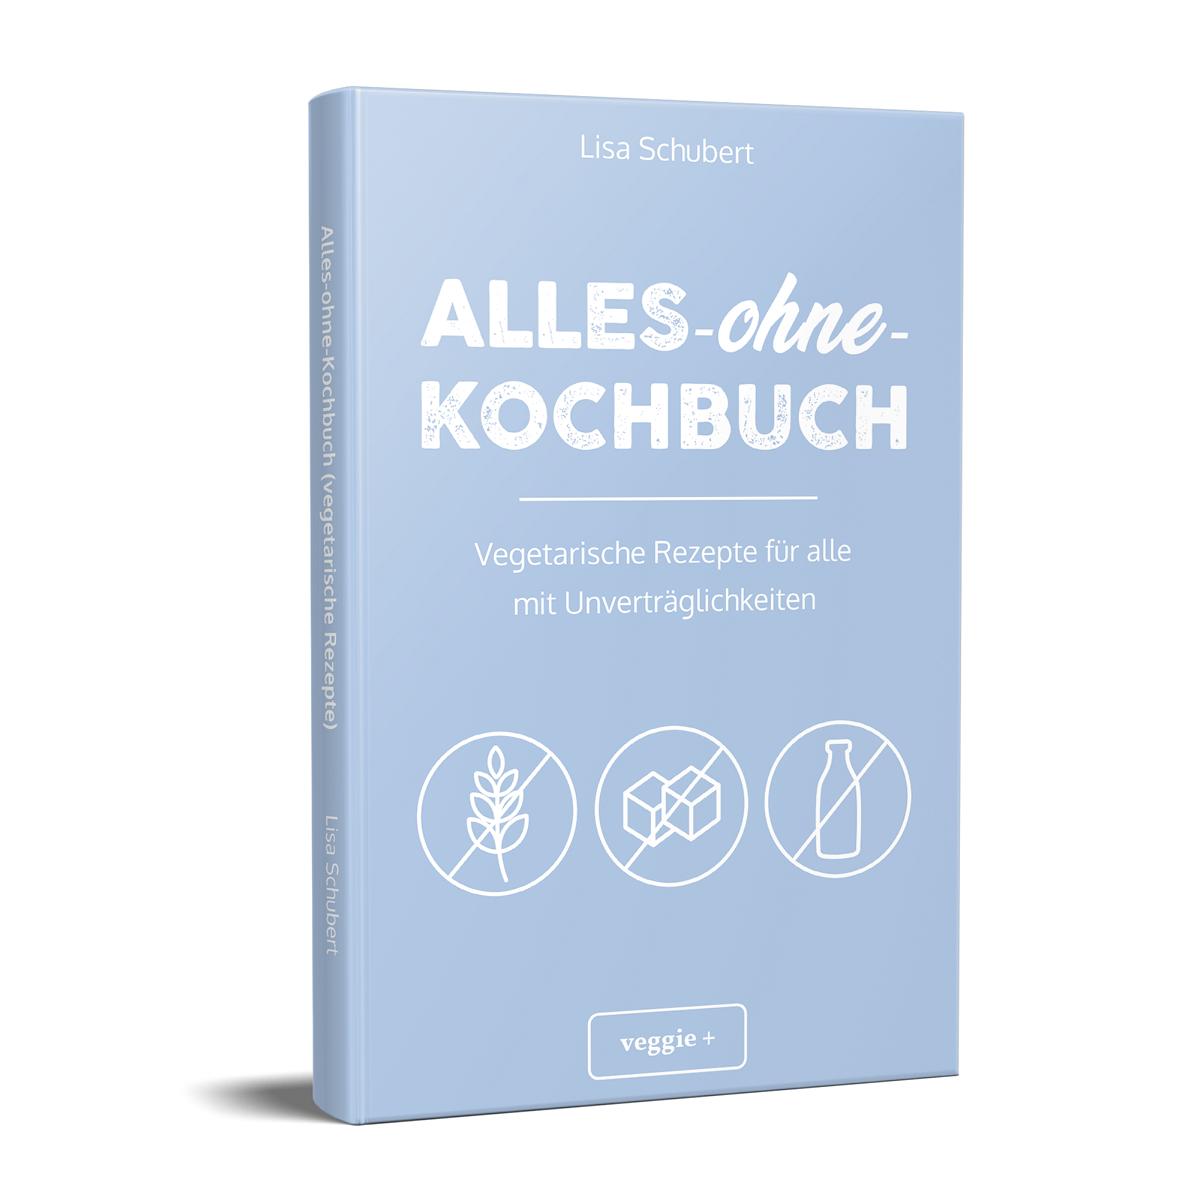 Alles-ohne-Kochbuch: Vegetarische Rezepte für alle mit Unverträglichkeiten von Lisa Schubert im veggie + Verlag